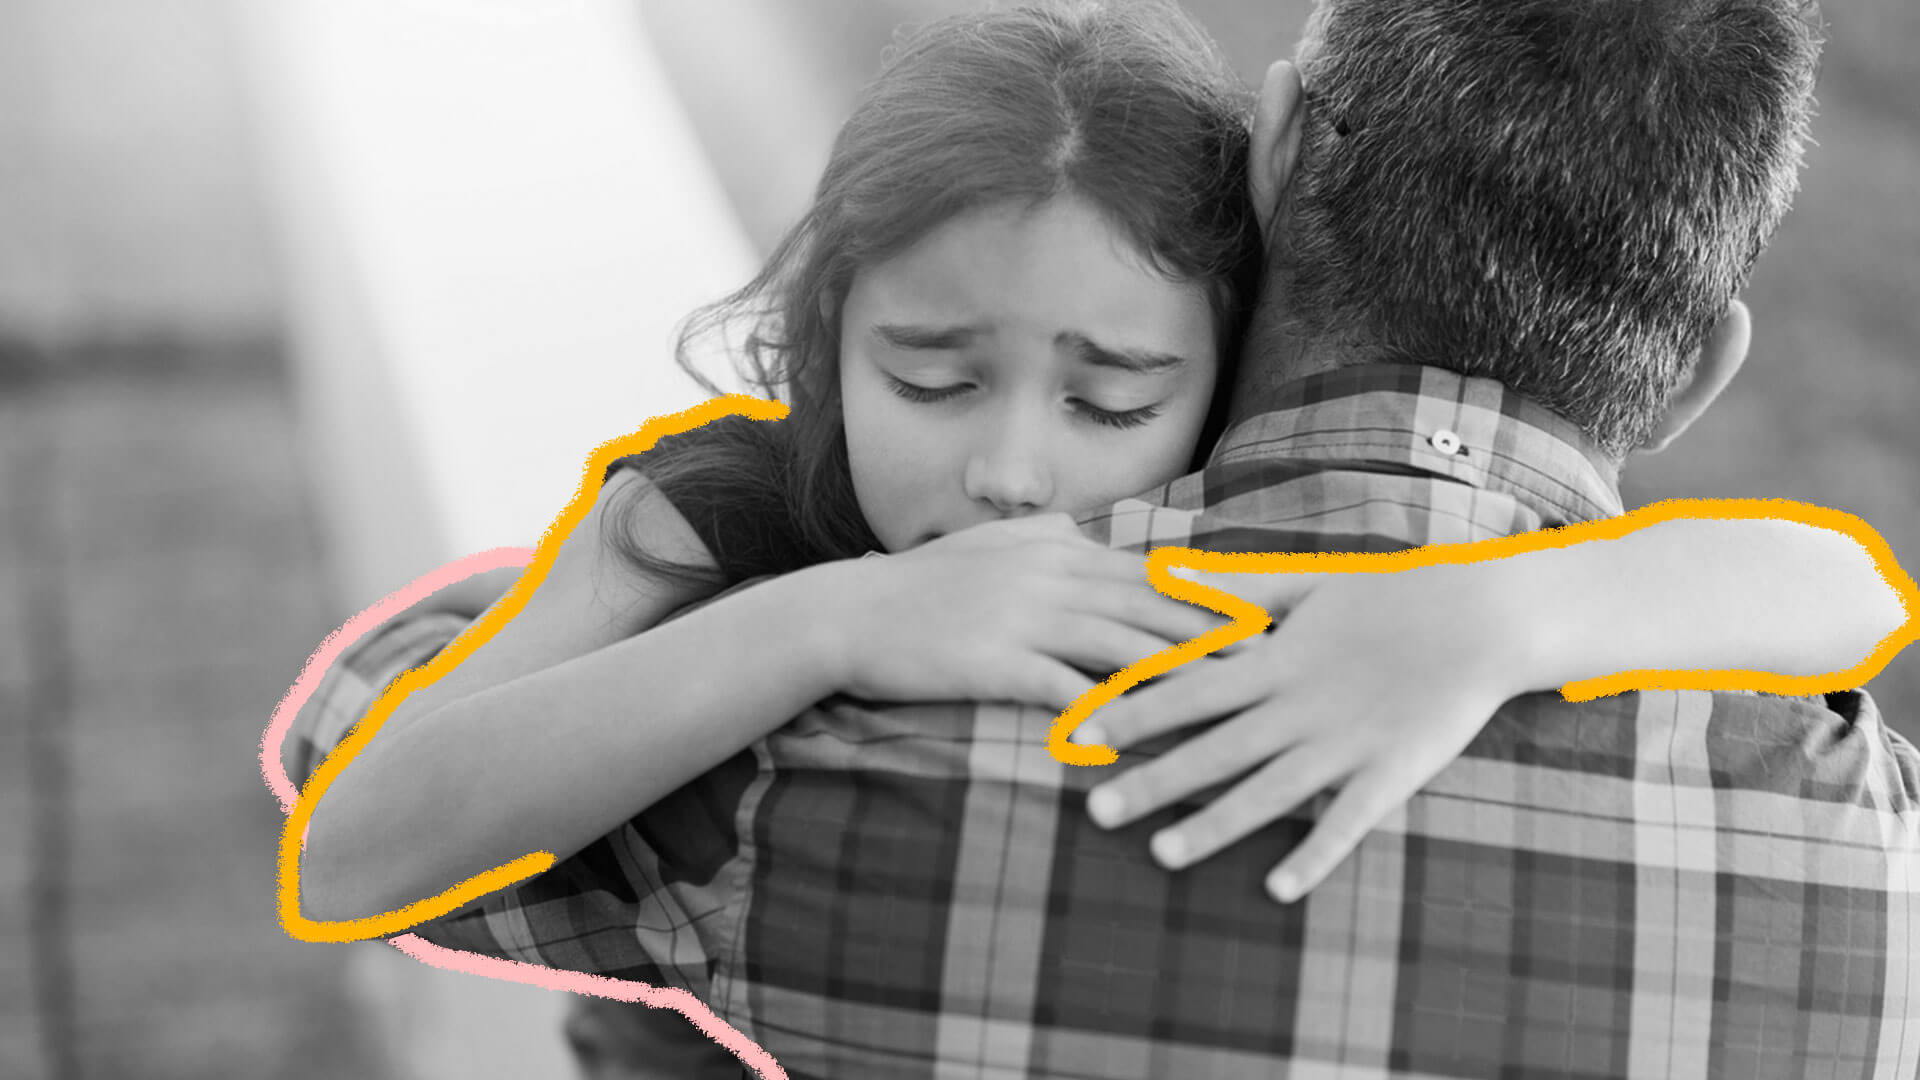 Foto em preto e branco mostra menina abraçando um homem. O semblante dela é triste.